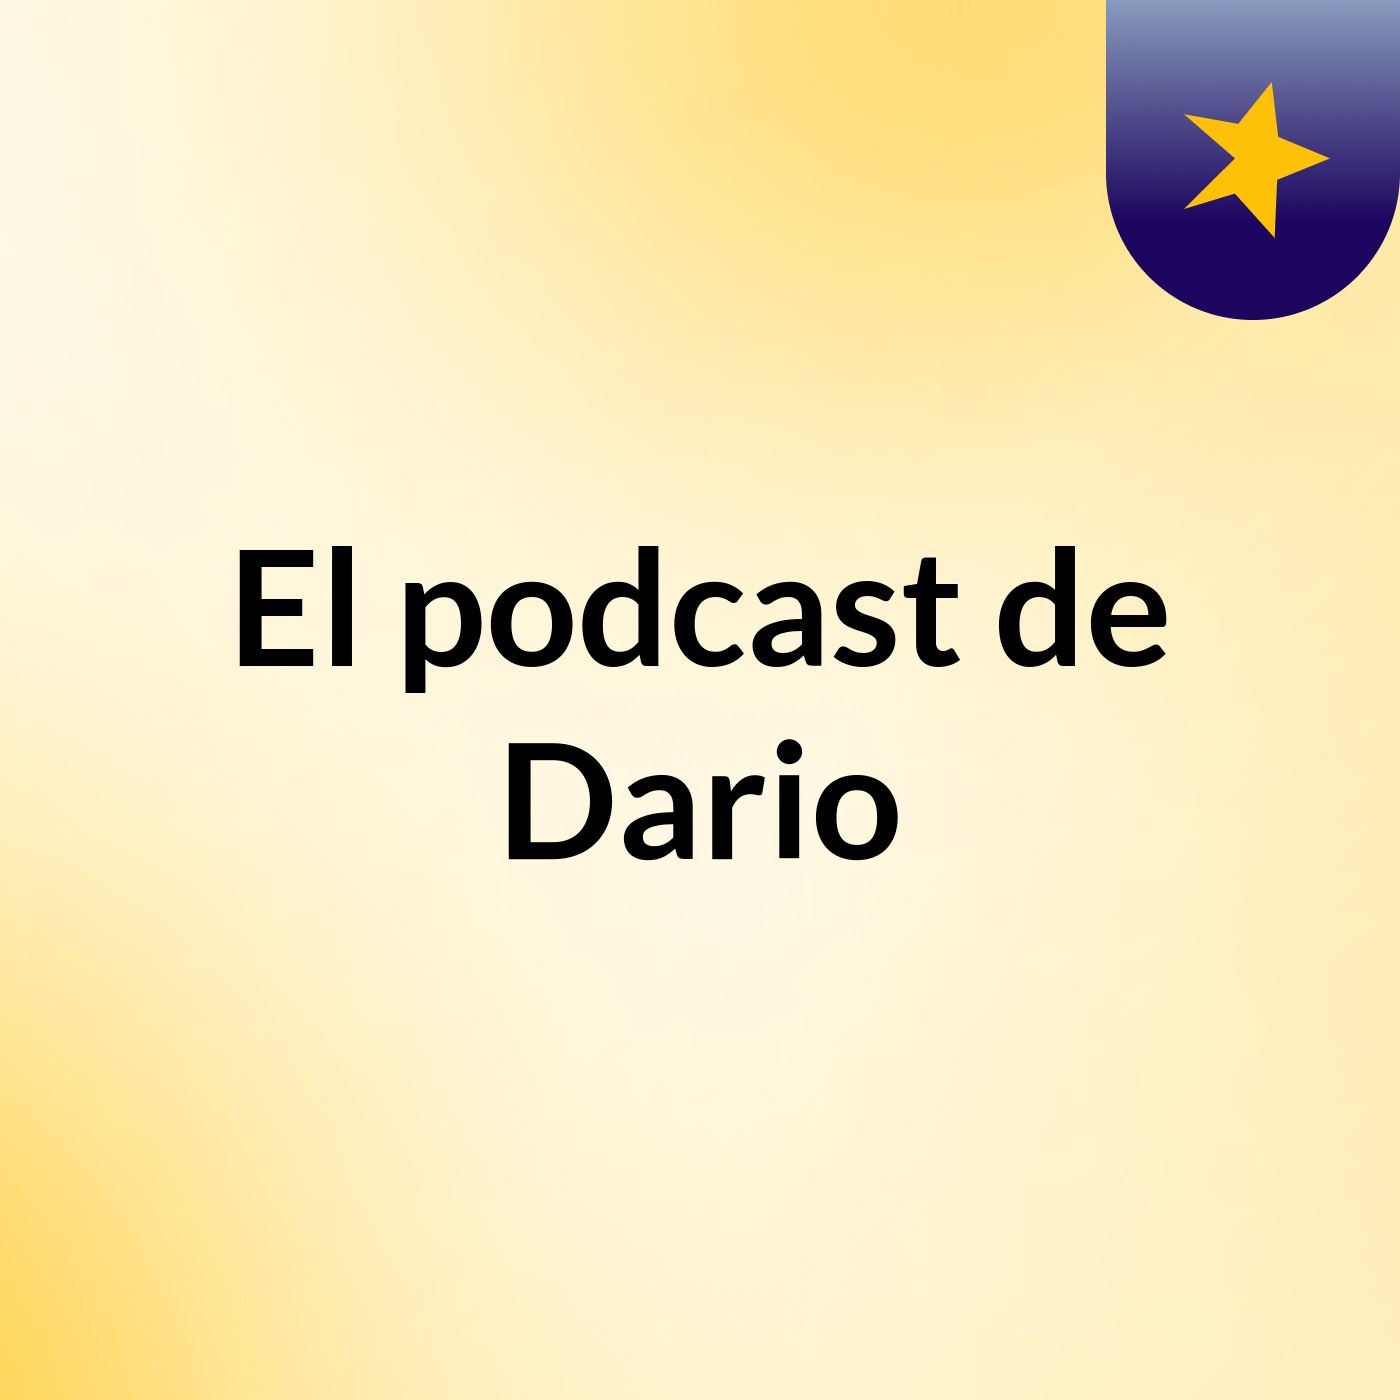 Episodio 2 - El podcast de Dario